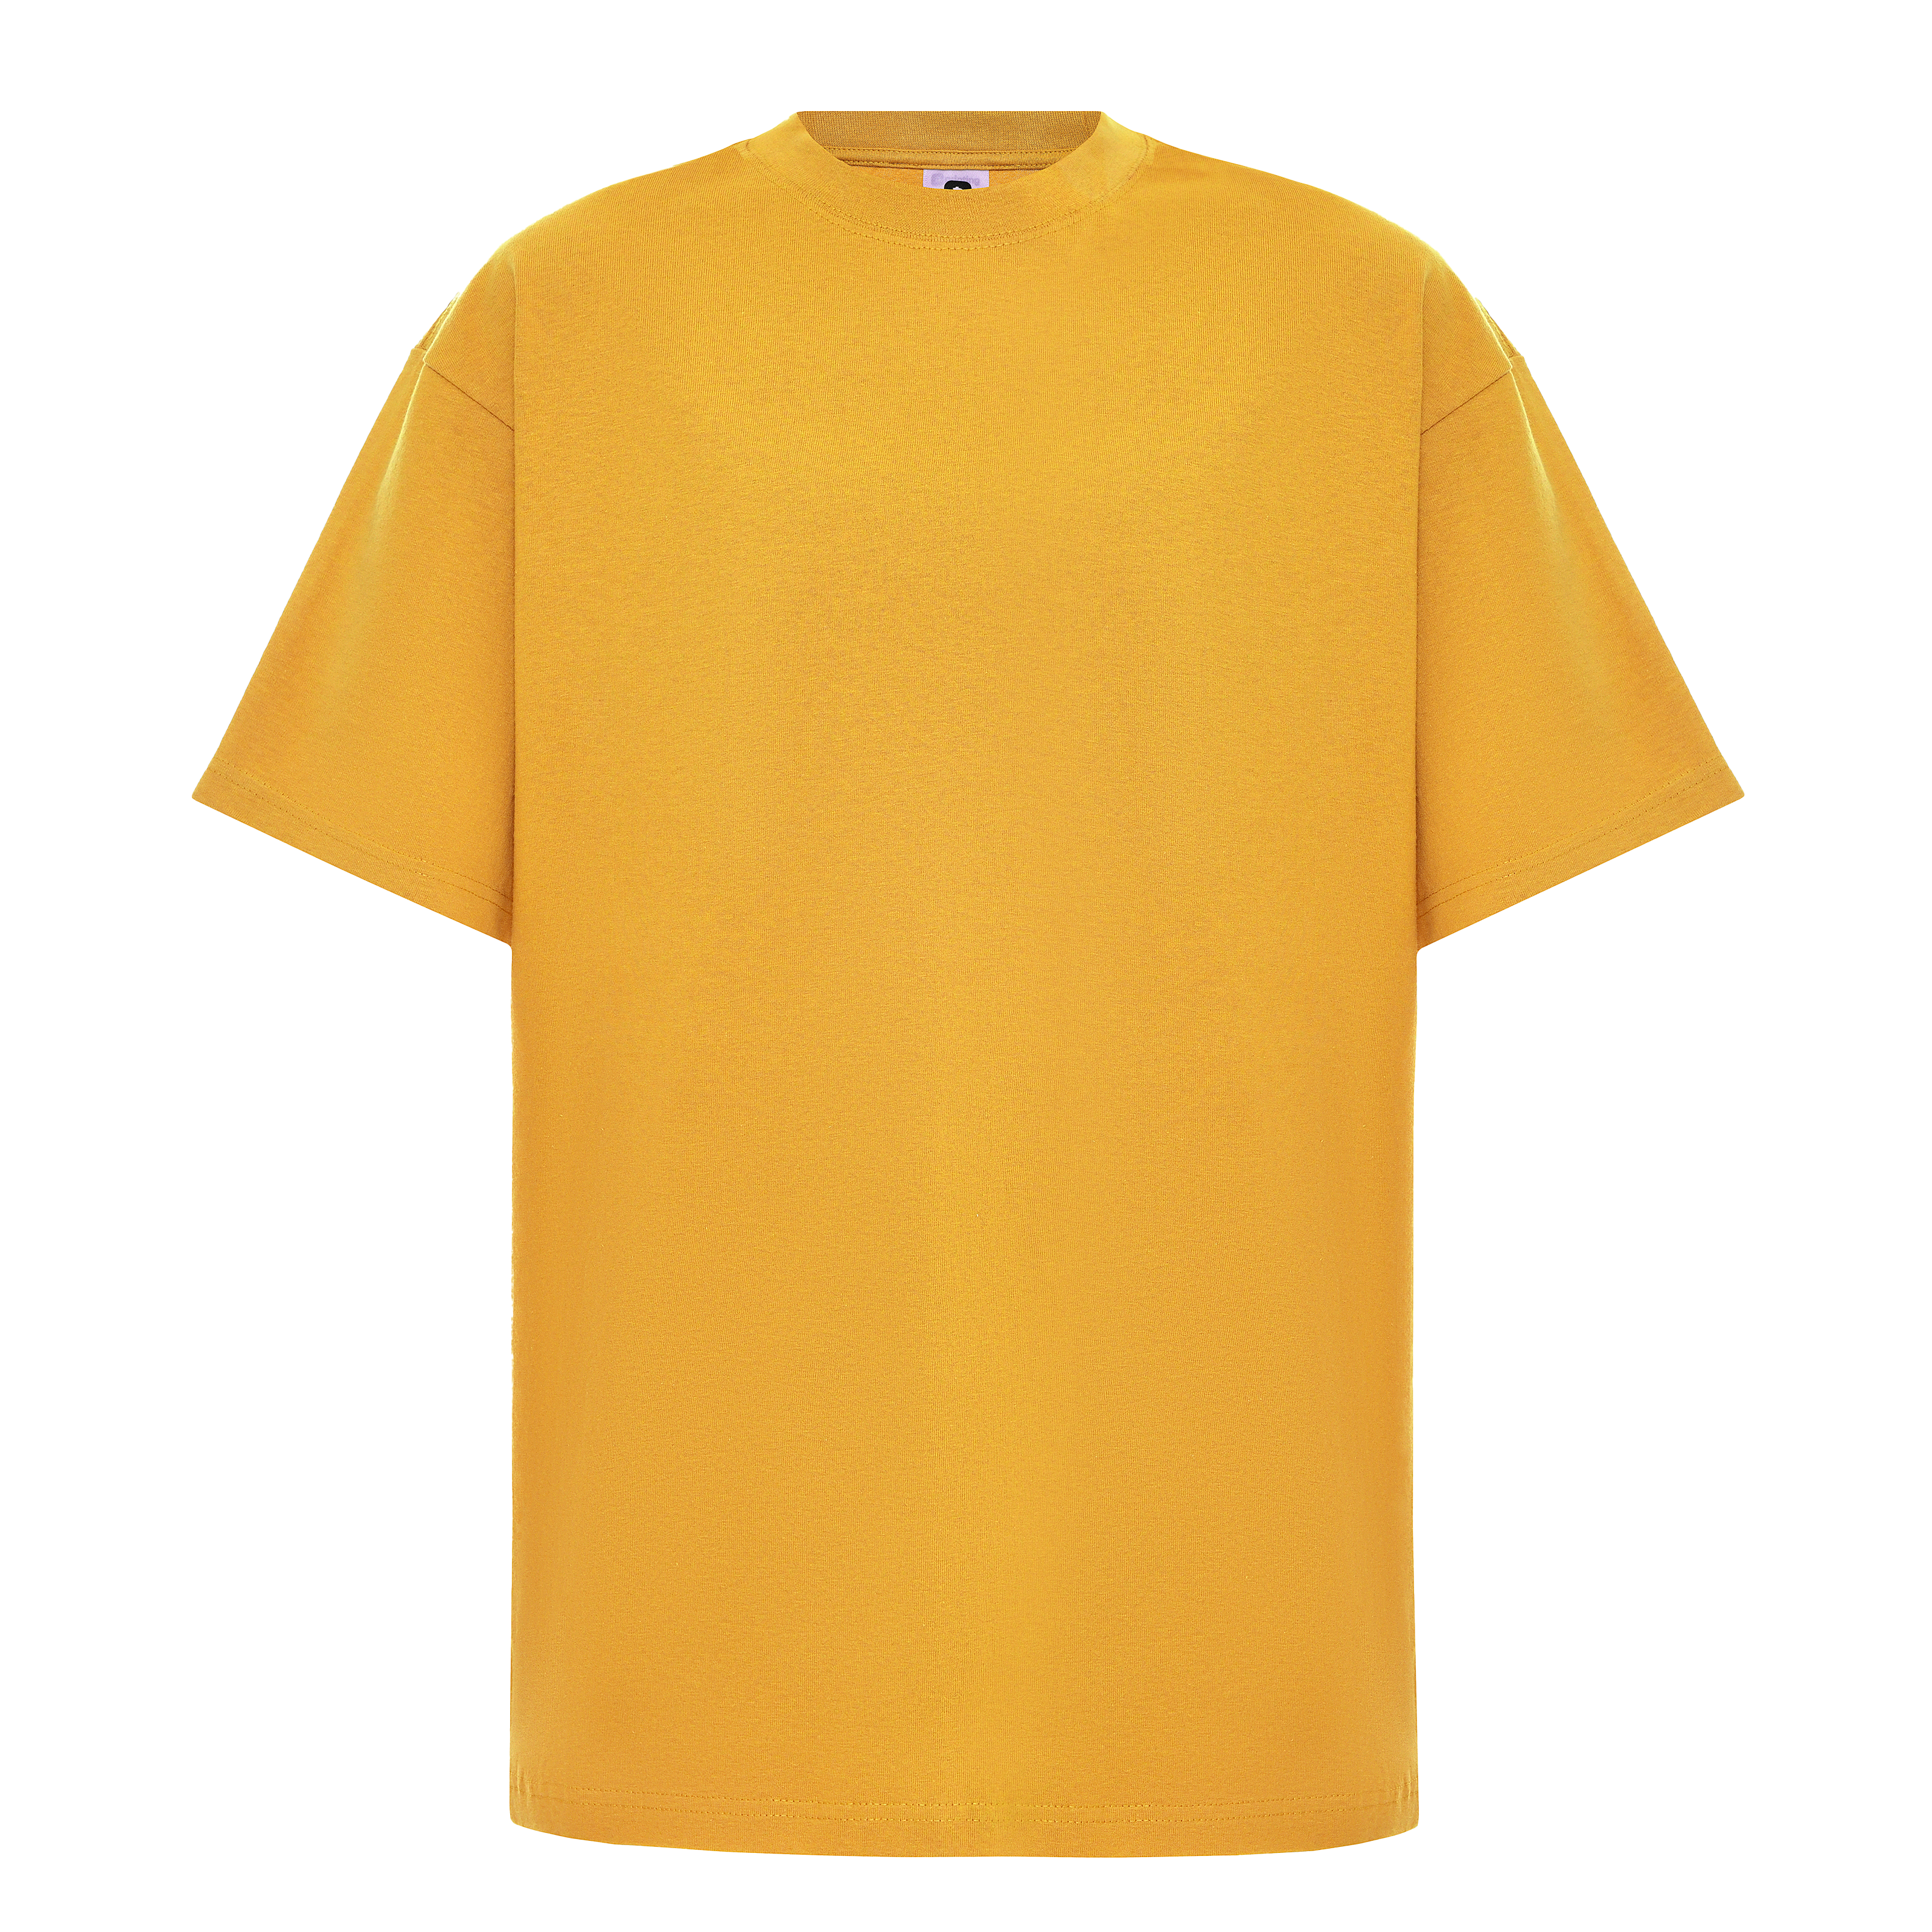 Garment Dye T-Shirt - Standard Size - Mustard